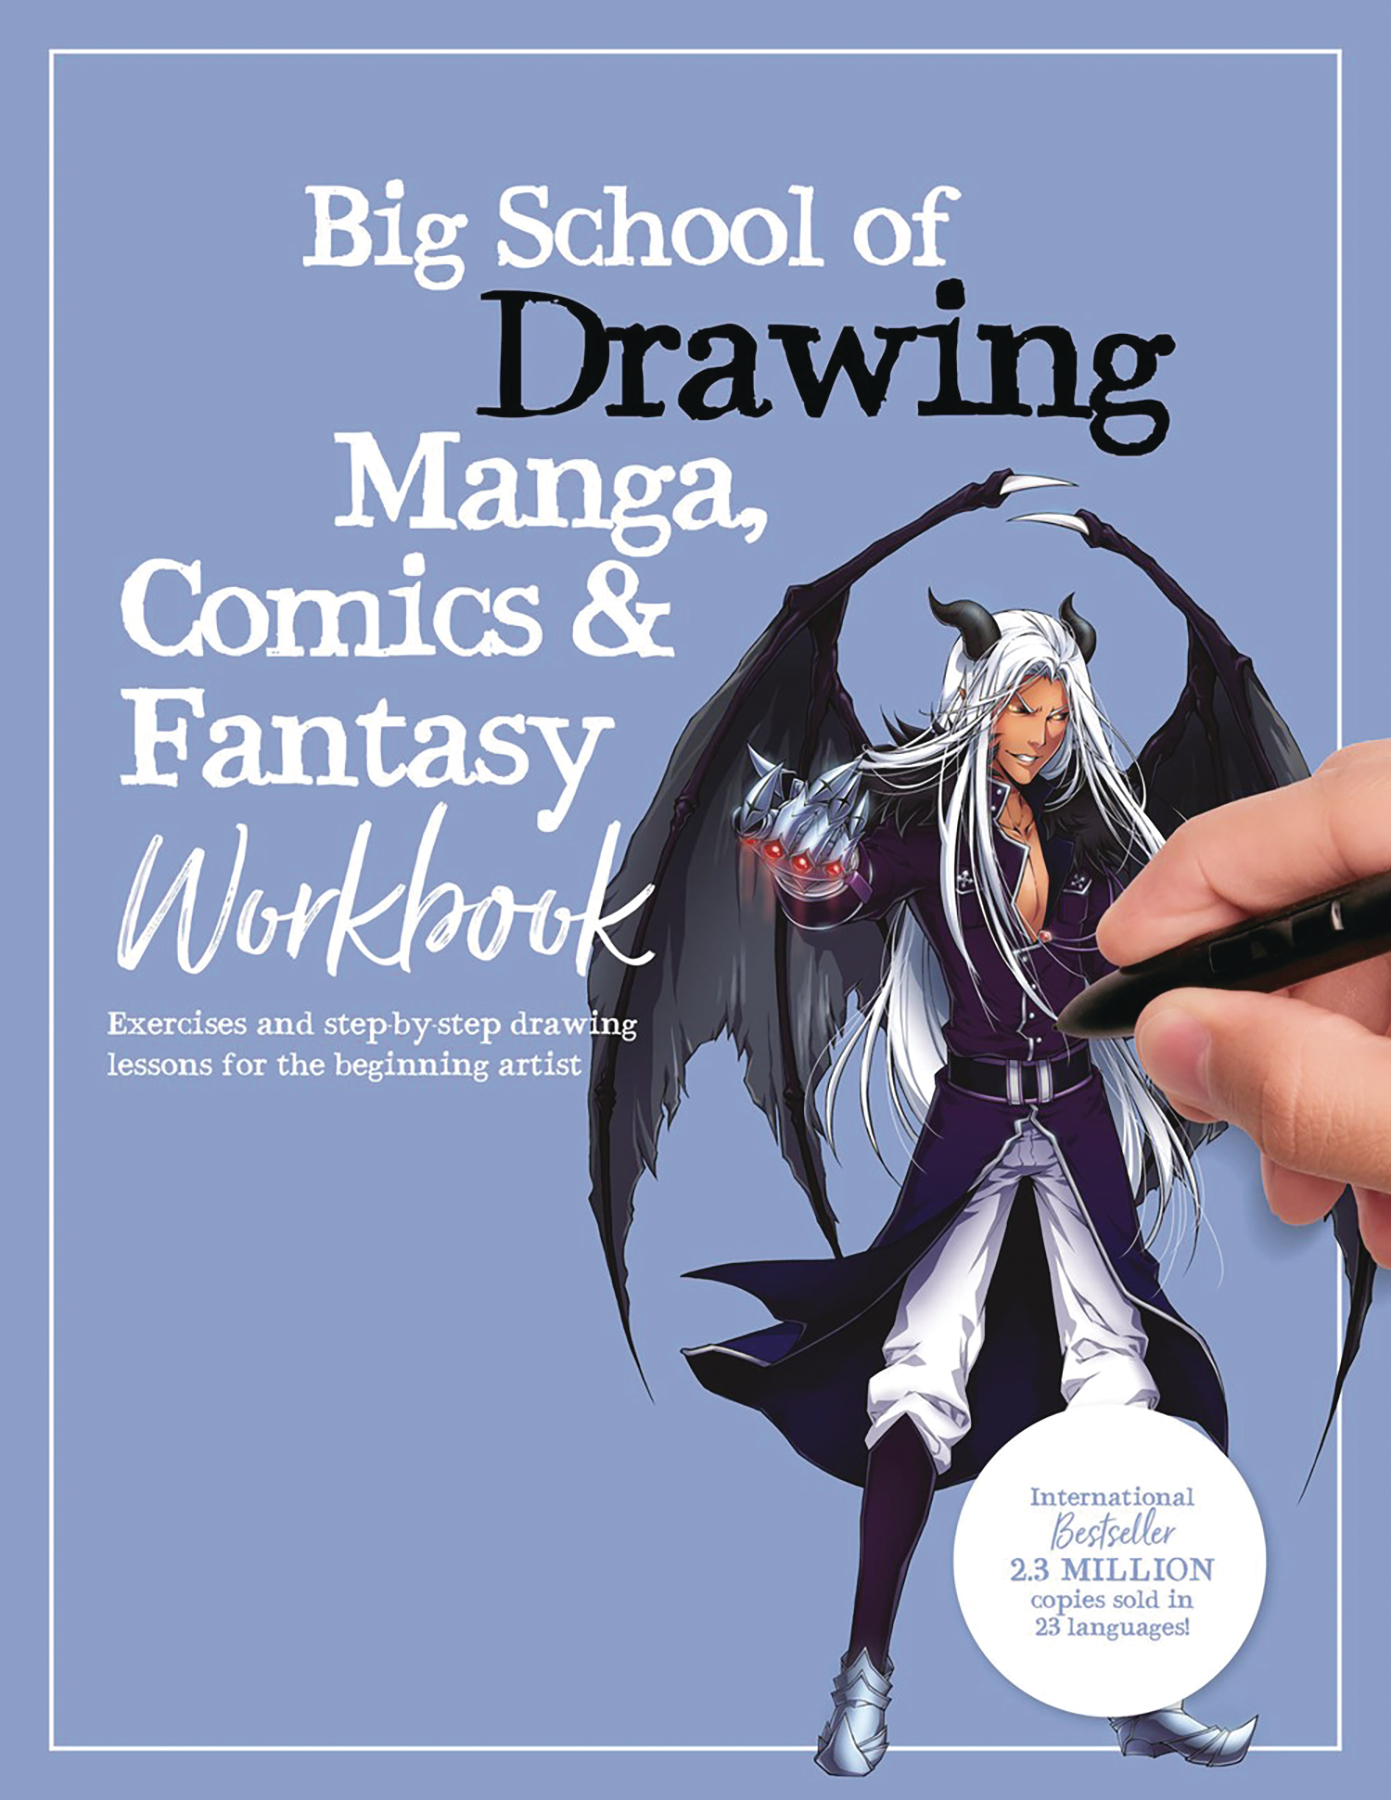 Big Soft Coverhool of Drawing Manga Comics & Fantasy Workbook Soft Cover